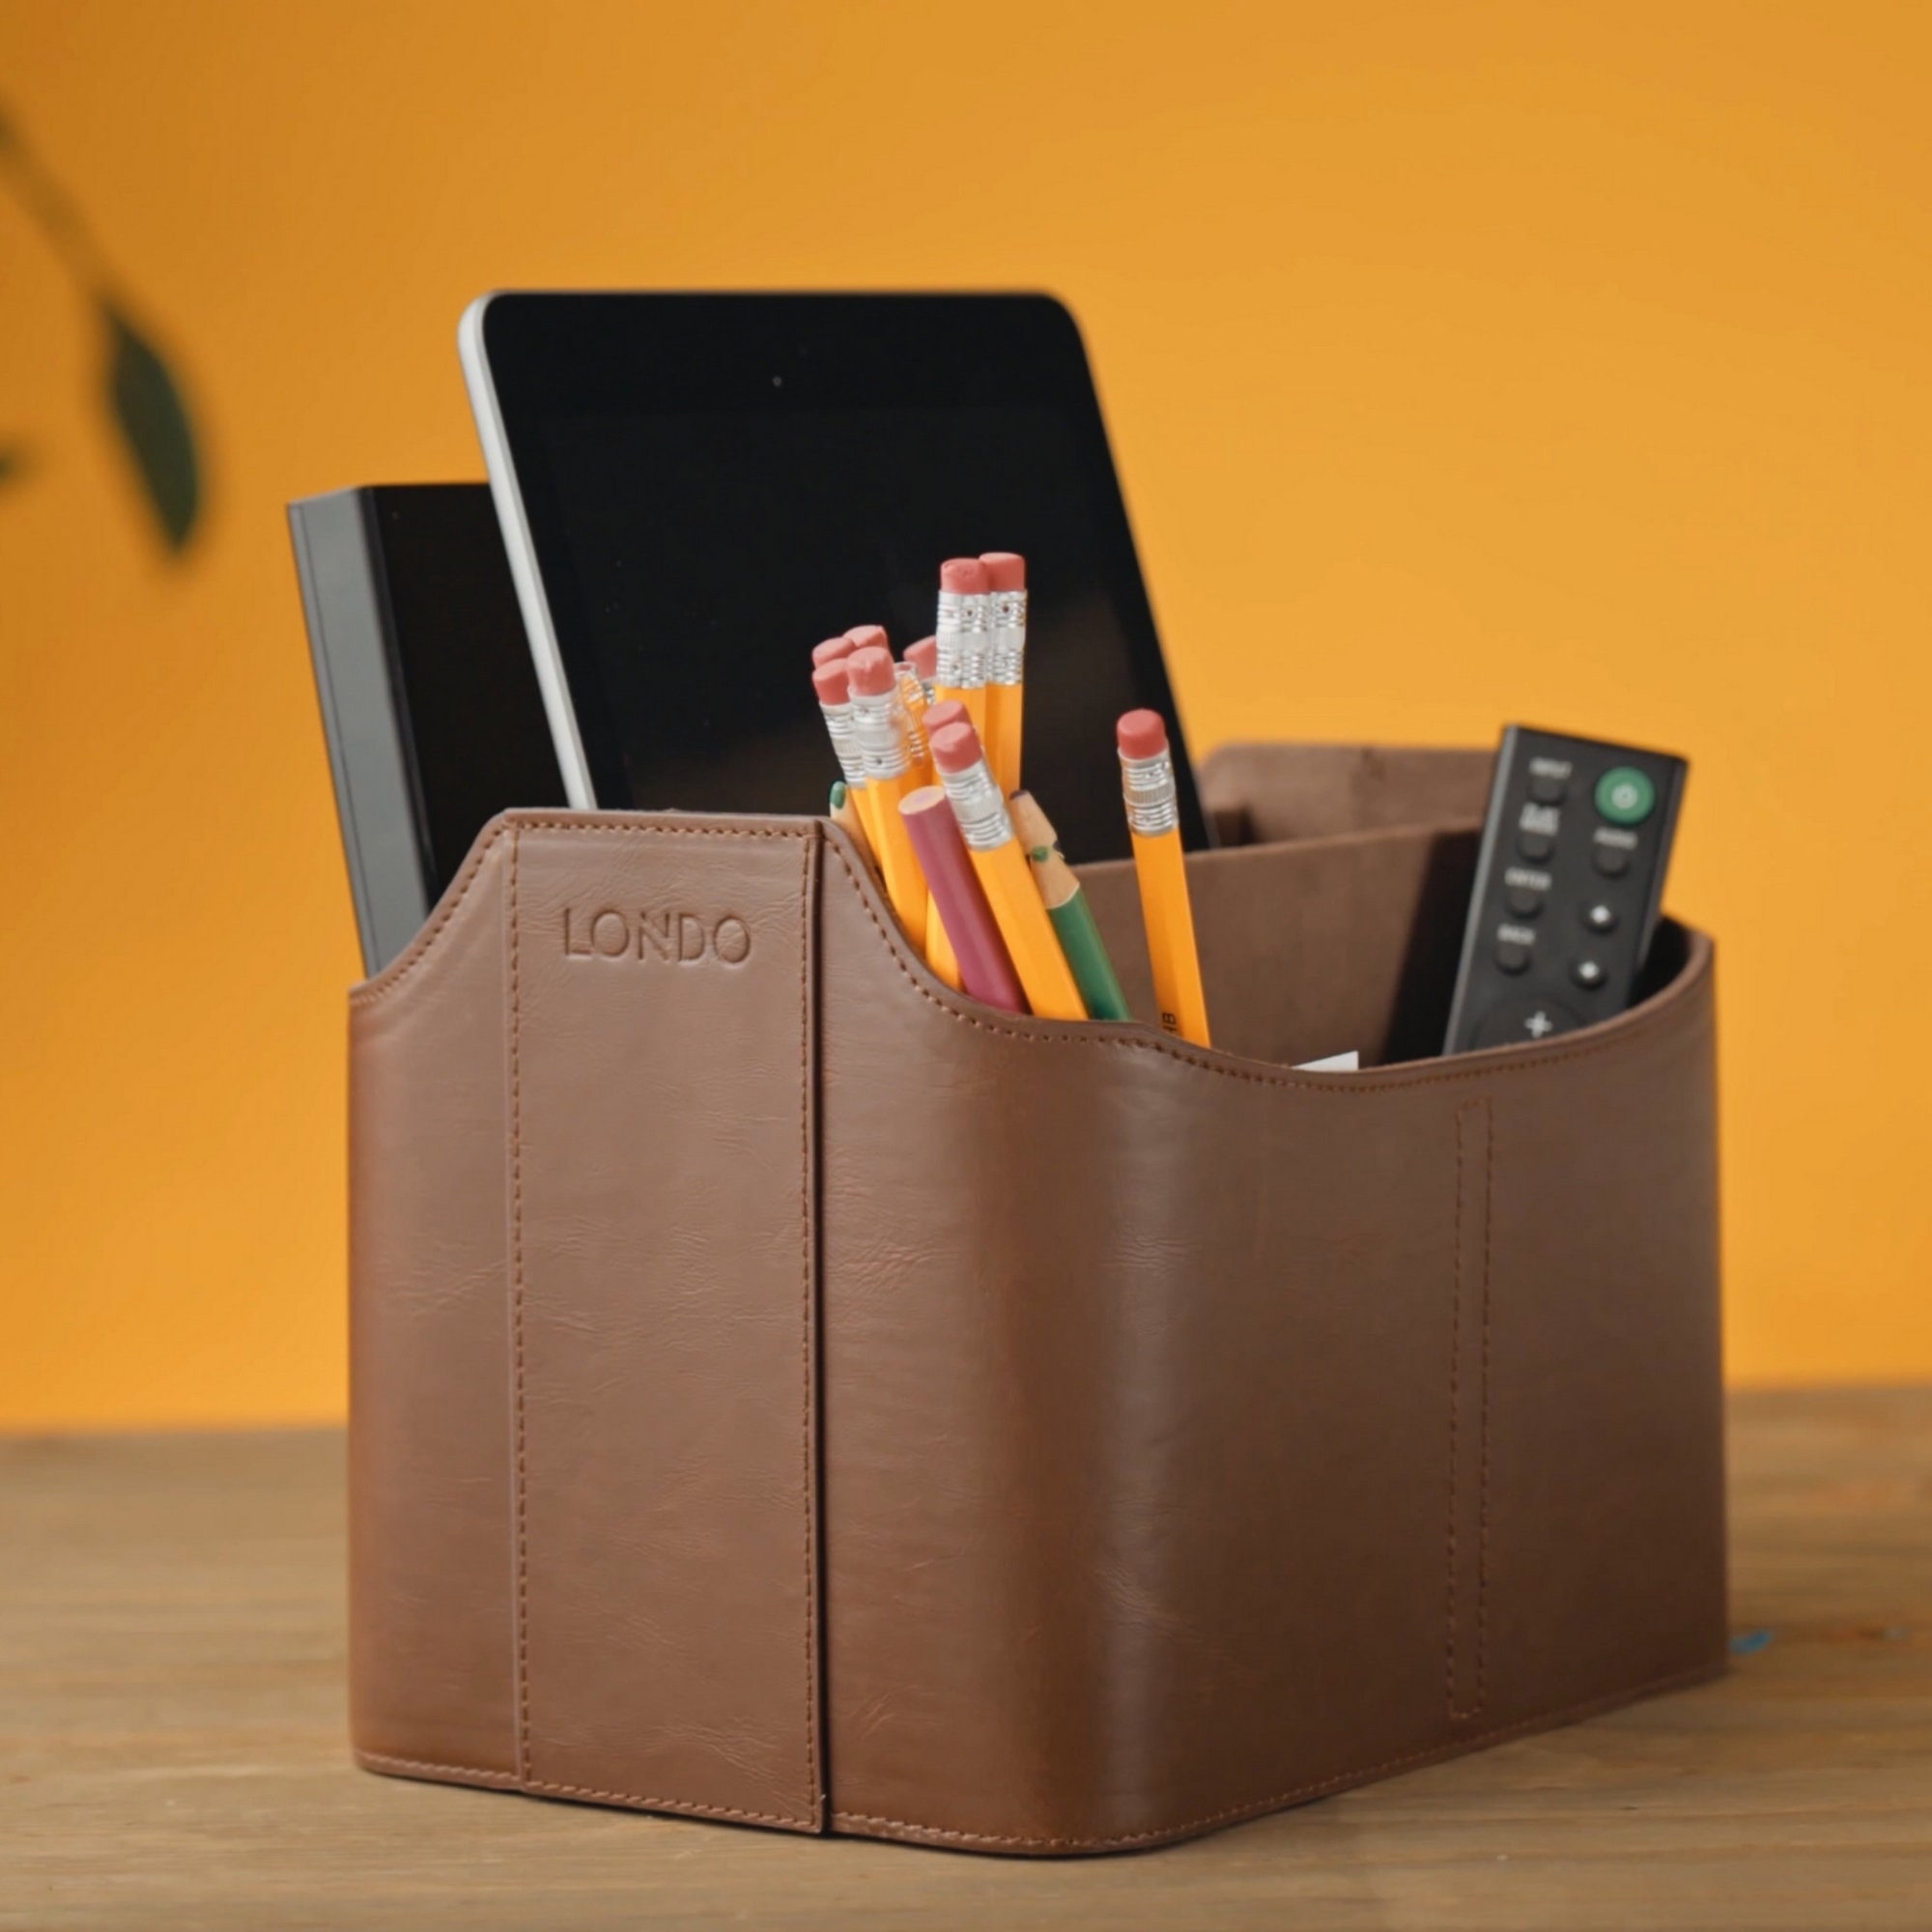 5 Piece Cute Office Desk Organizer Set Desktop Accessories for Women -  Stackable Desk Tray,Letter Sorter, Pencil Holder,File hHolder and Stick  Note Holder,Black